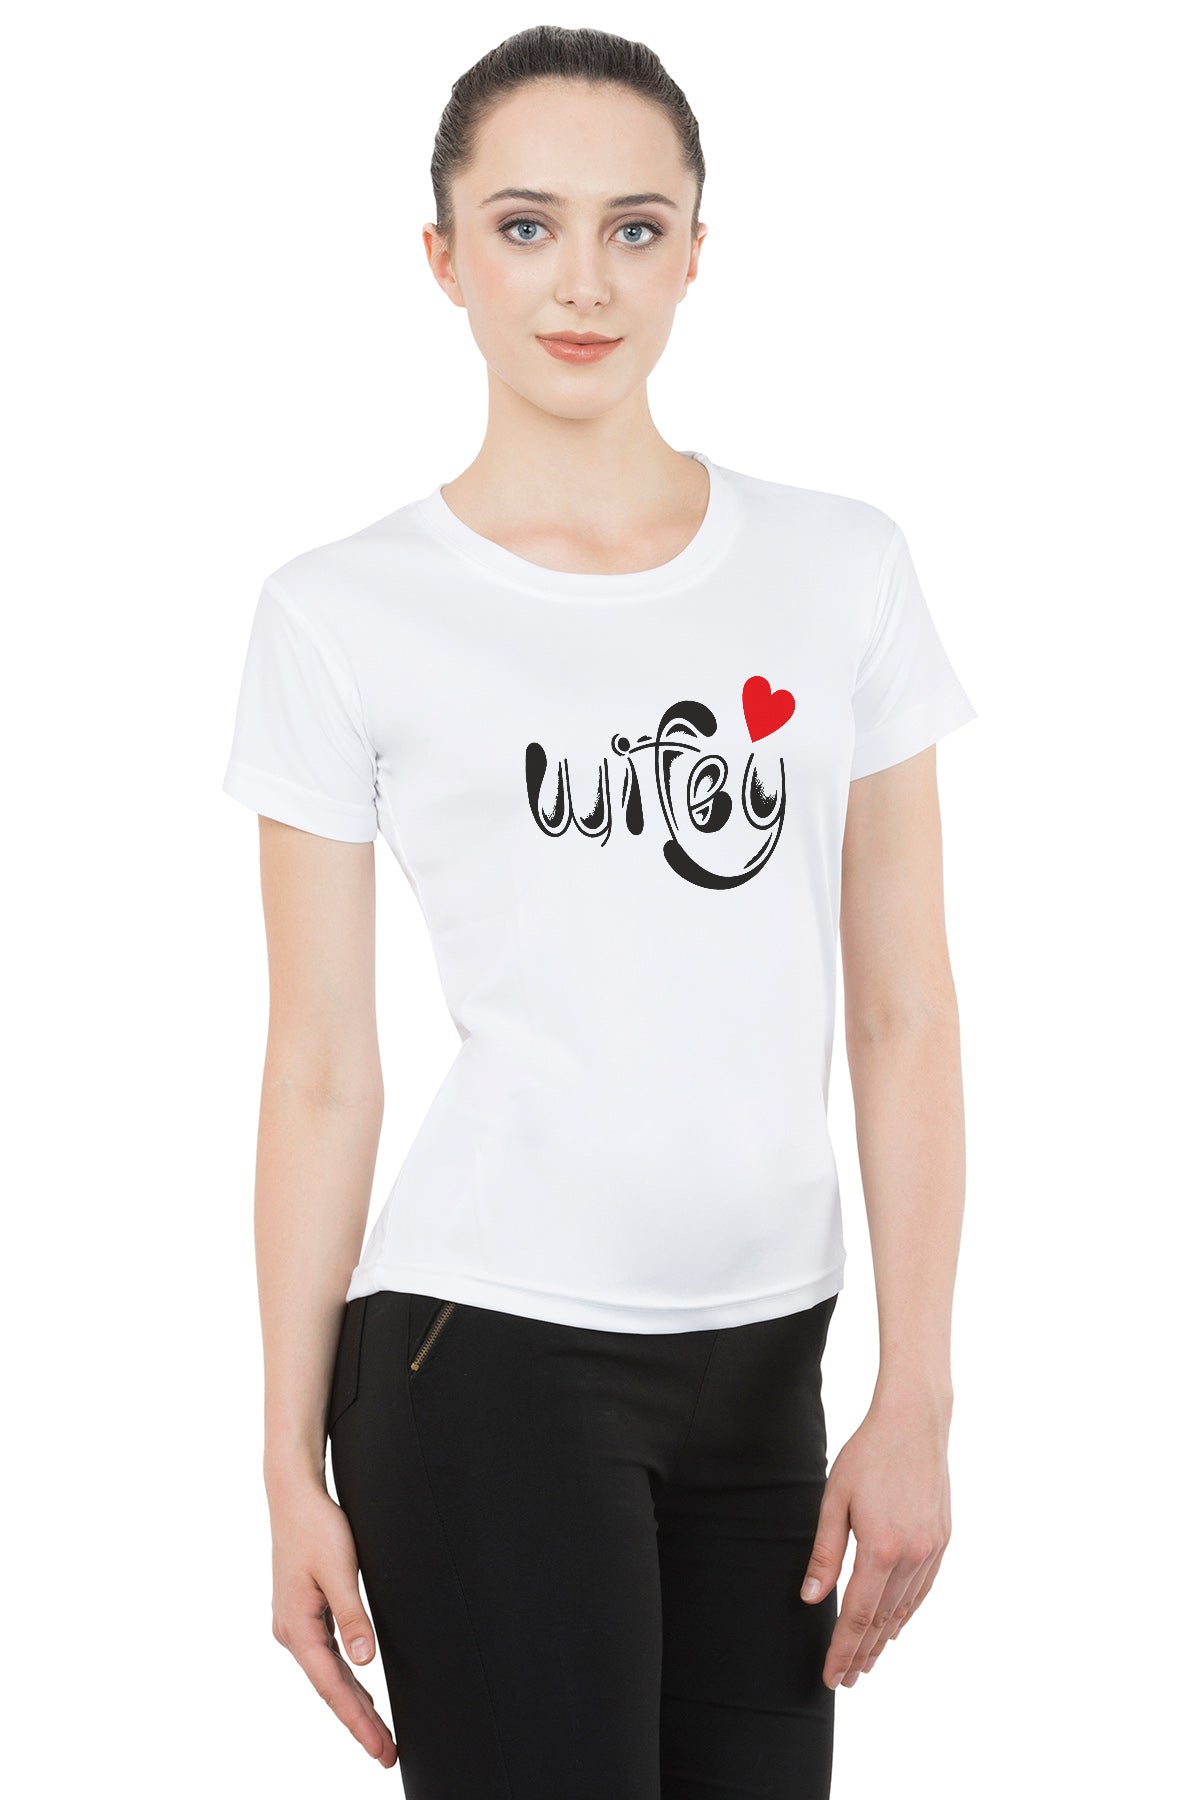 Hubby Wifey matching Couple T shirts- White